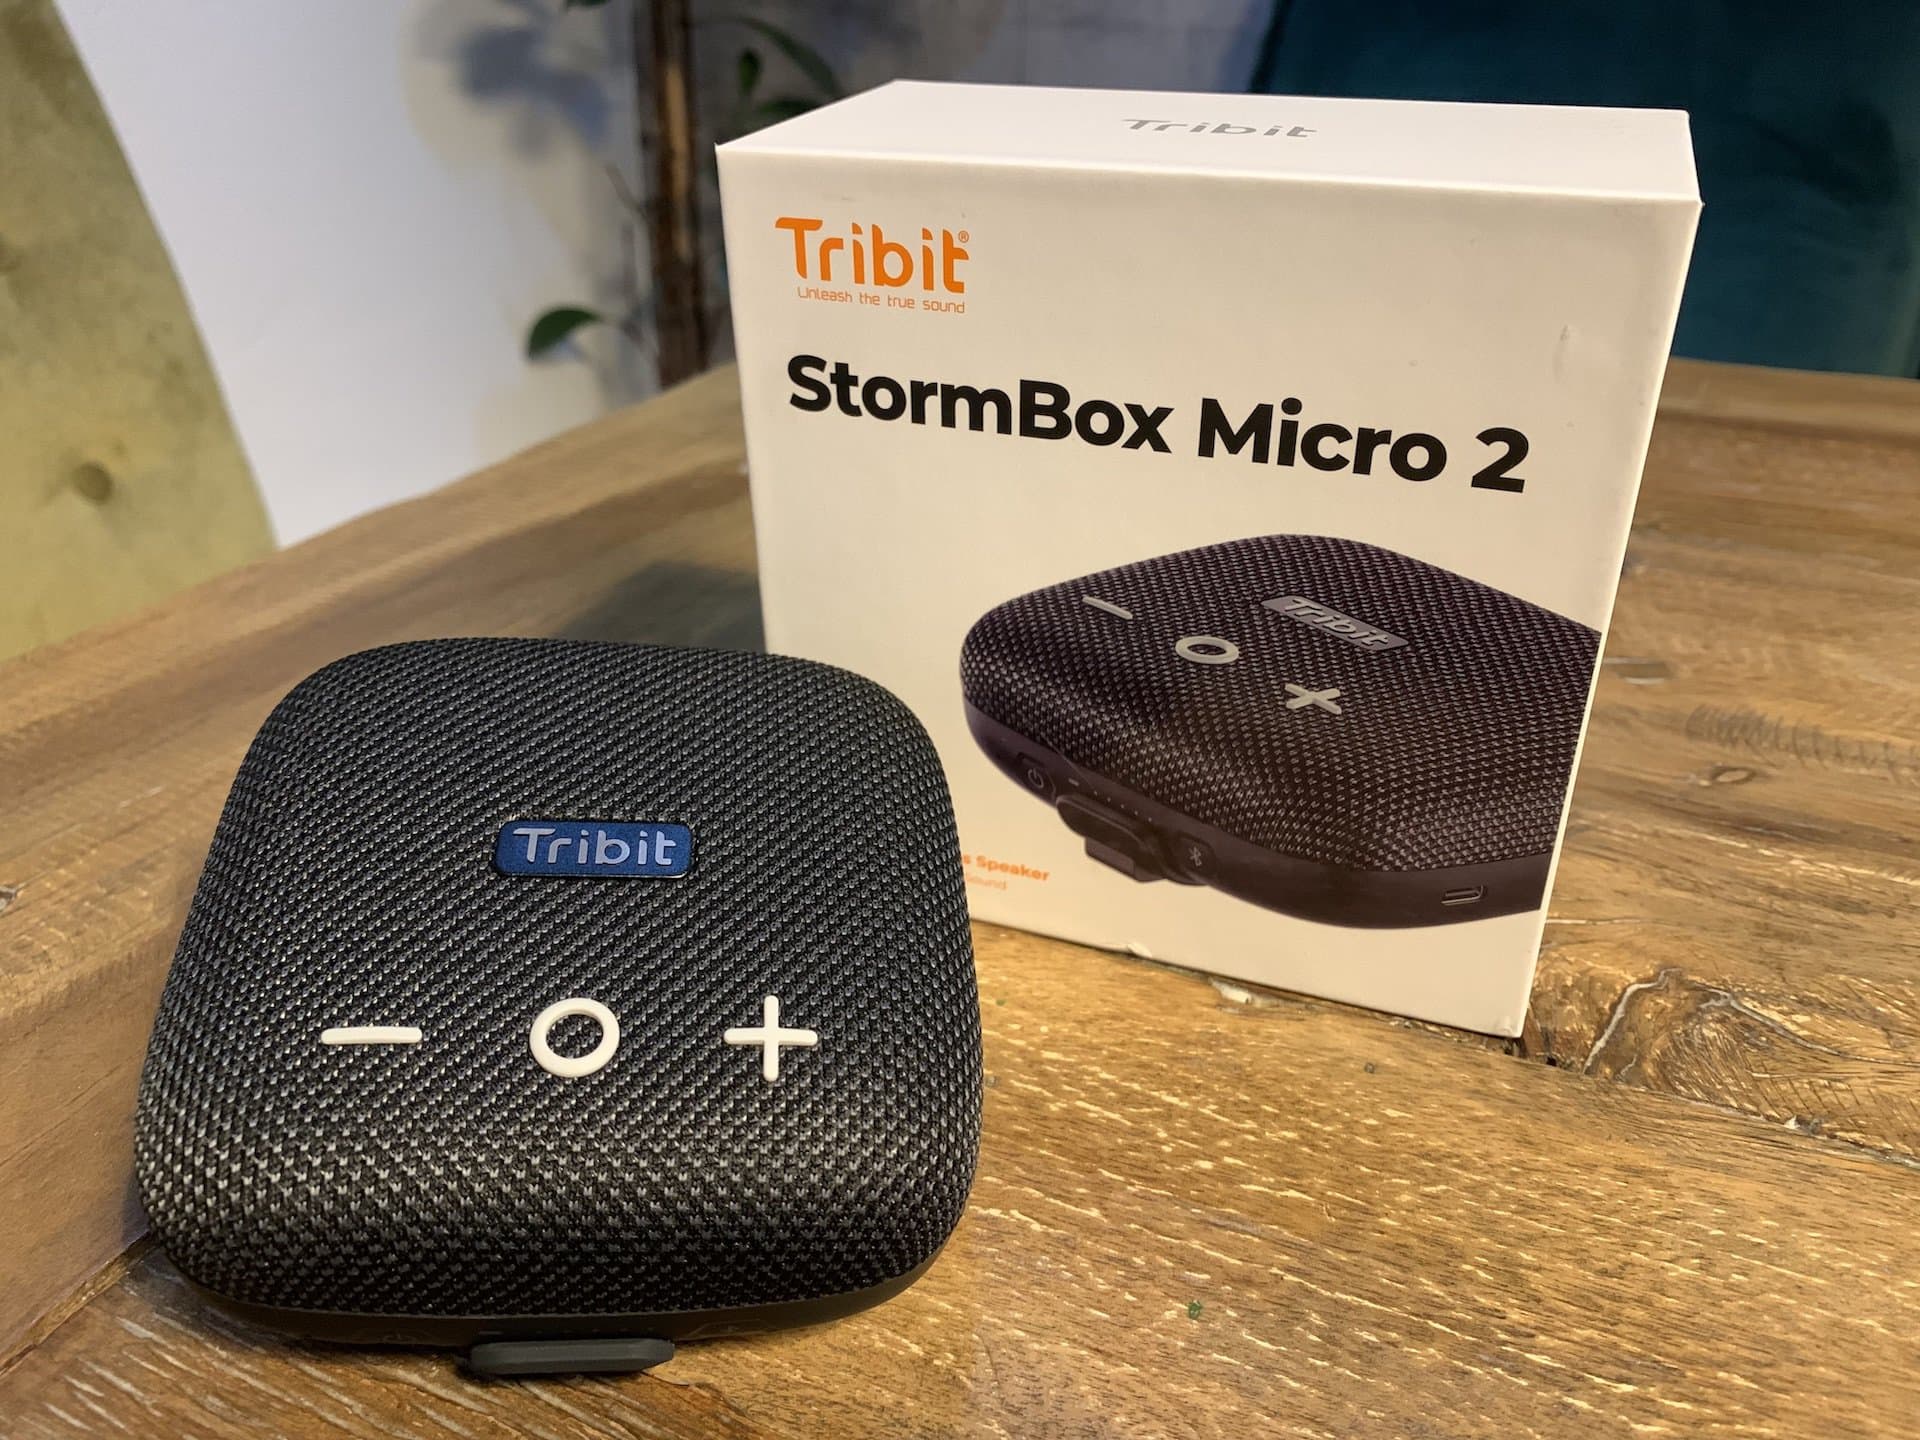 Tribit StormBox Micro 2 probado en pruebas: el pequeño desvalido hace mucho ruido